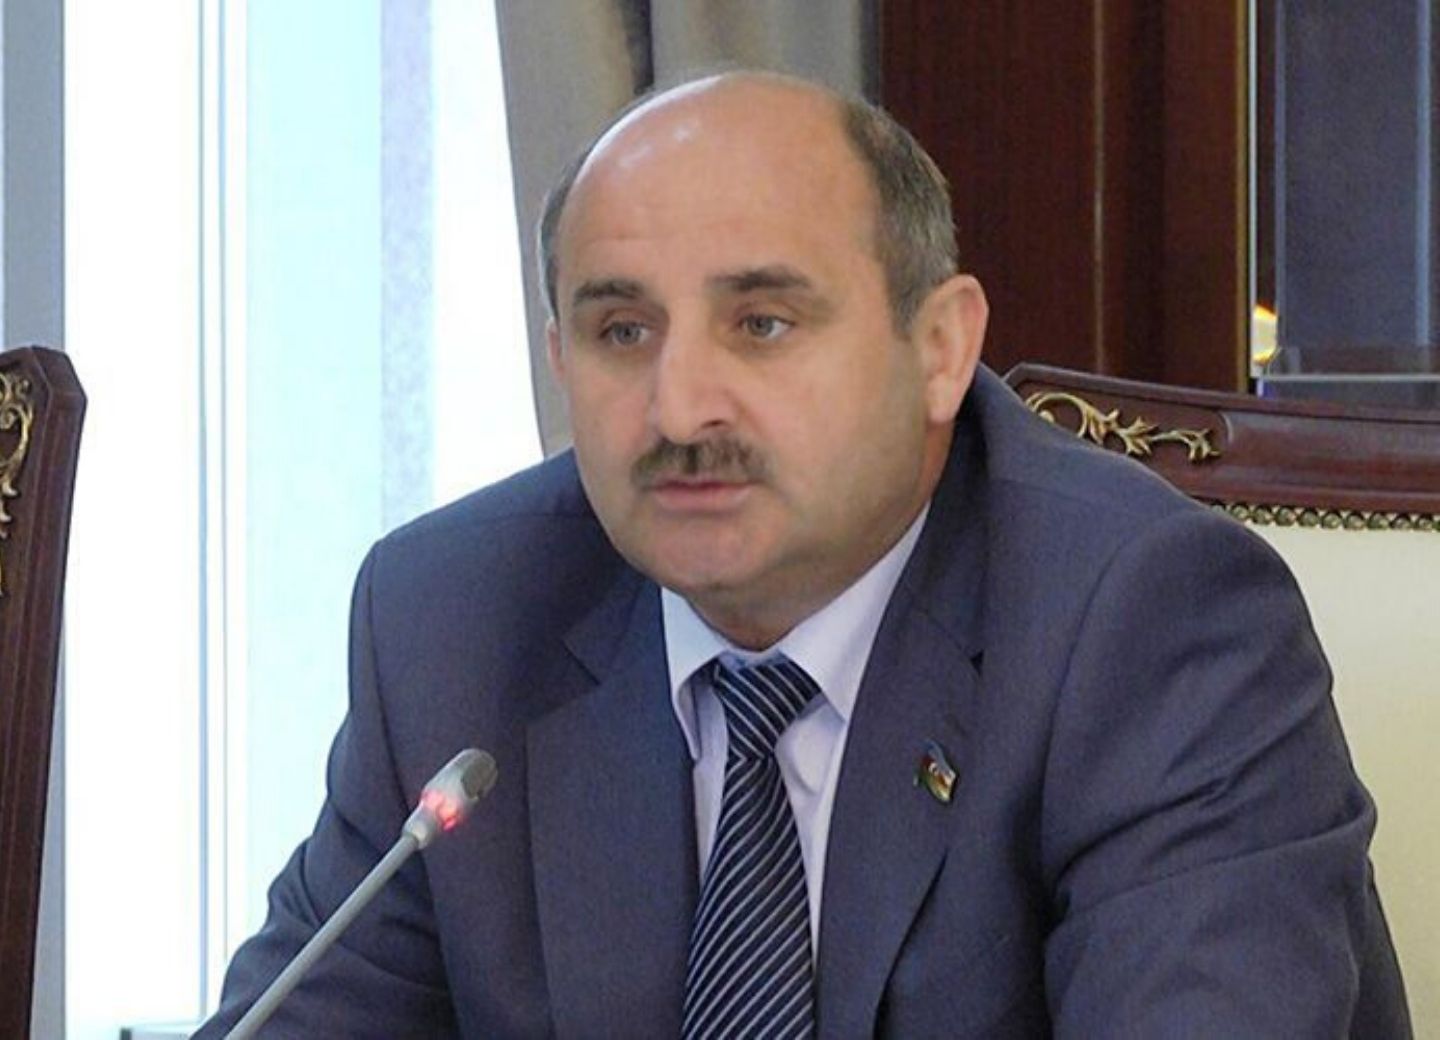 Чингиз Ганизаде: Армения намерена превратить ЕСПЧ в инструмент в клеветнической кампании против Азербайджана